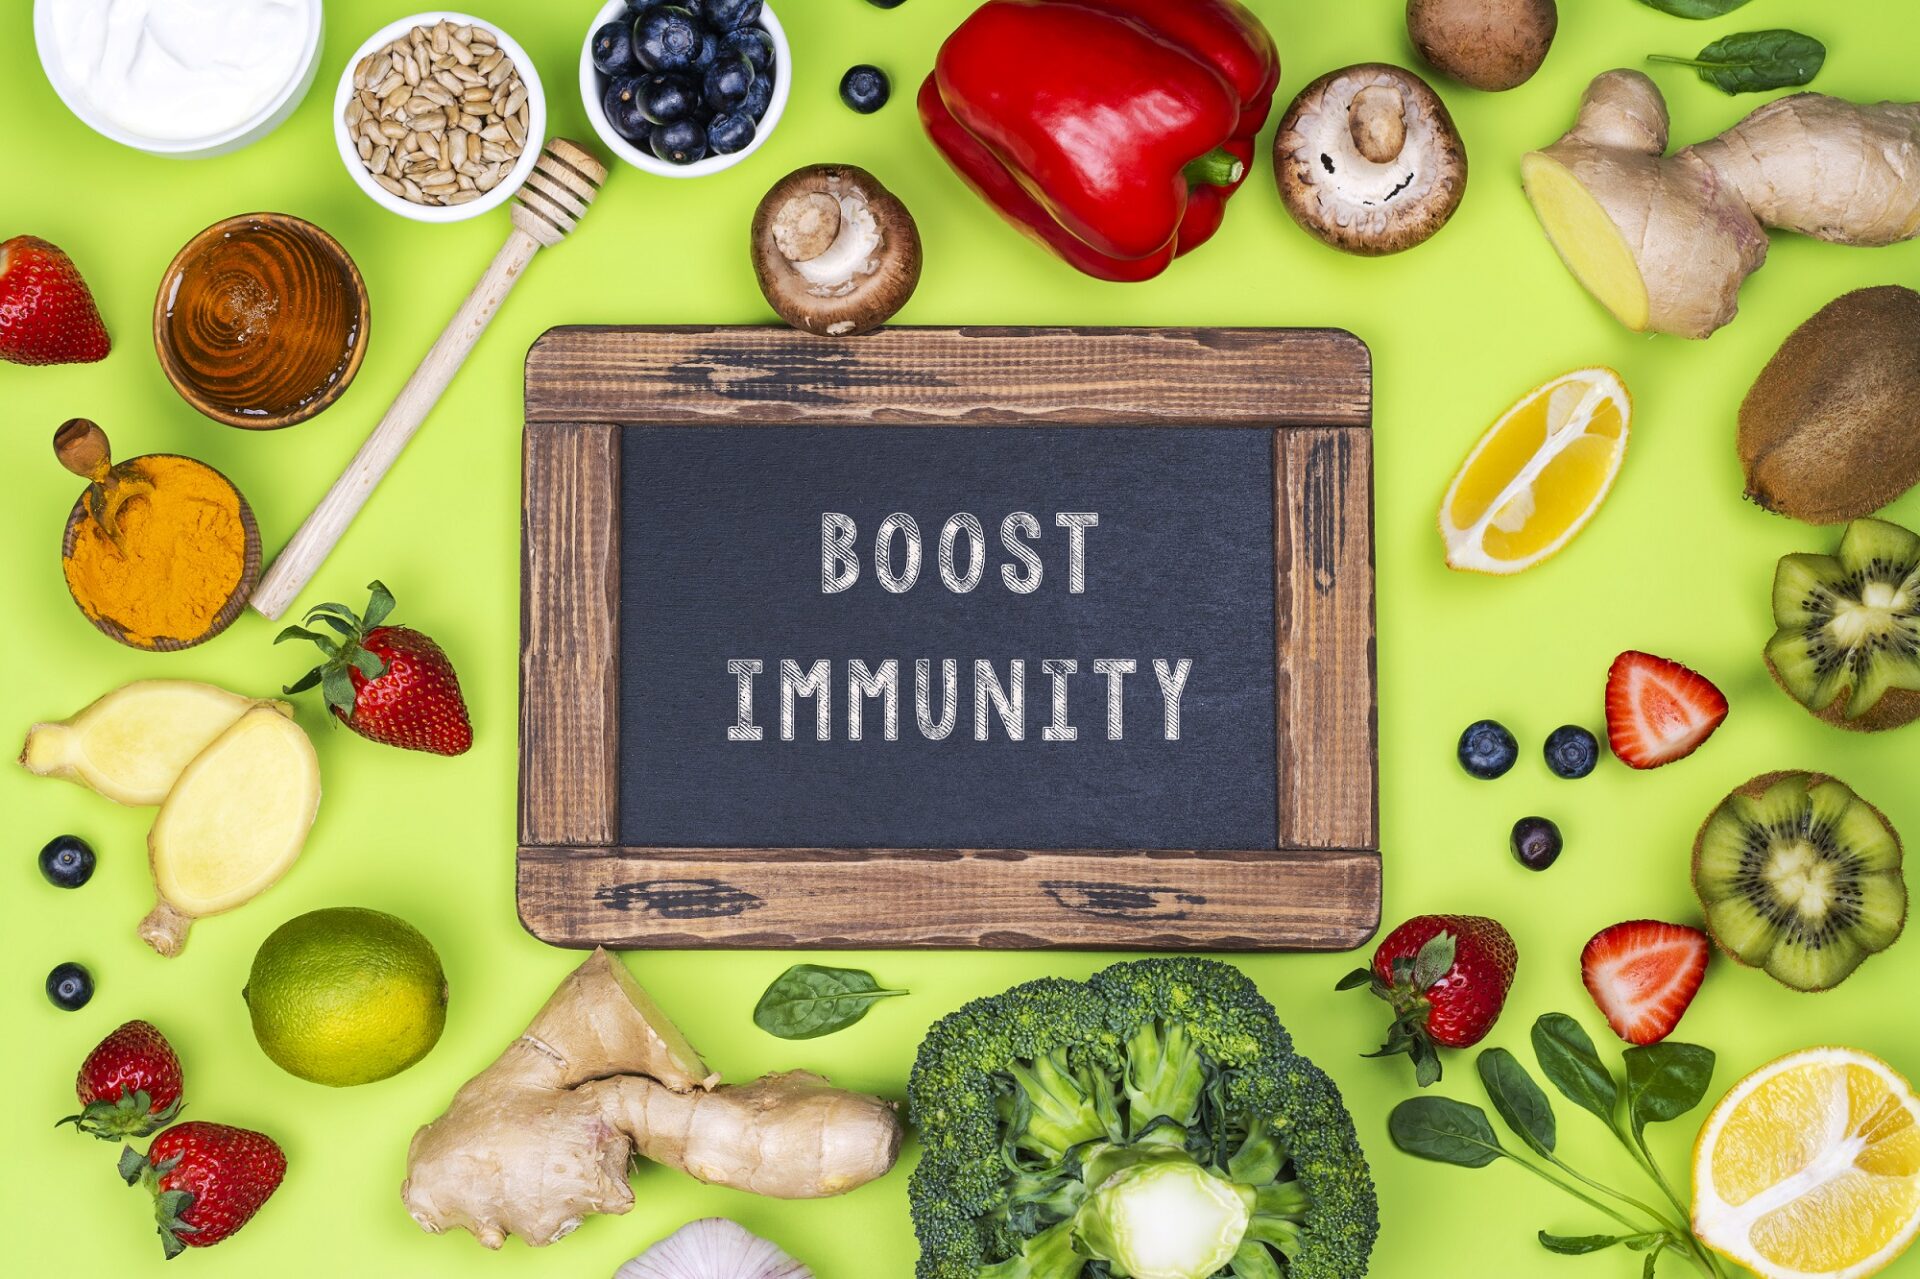 Immune-boosting immune system